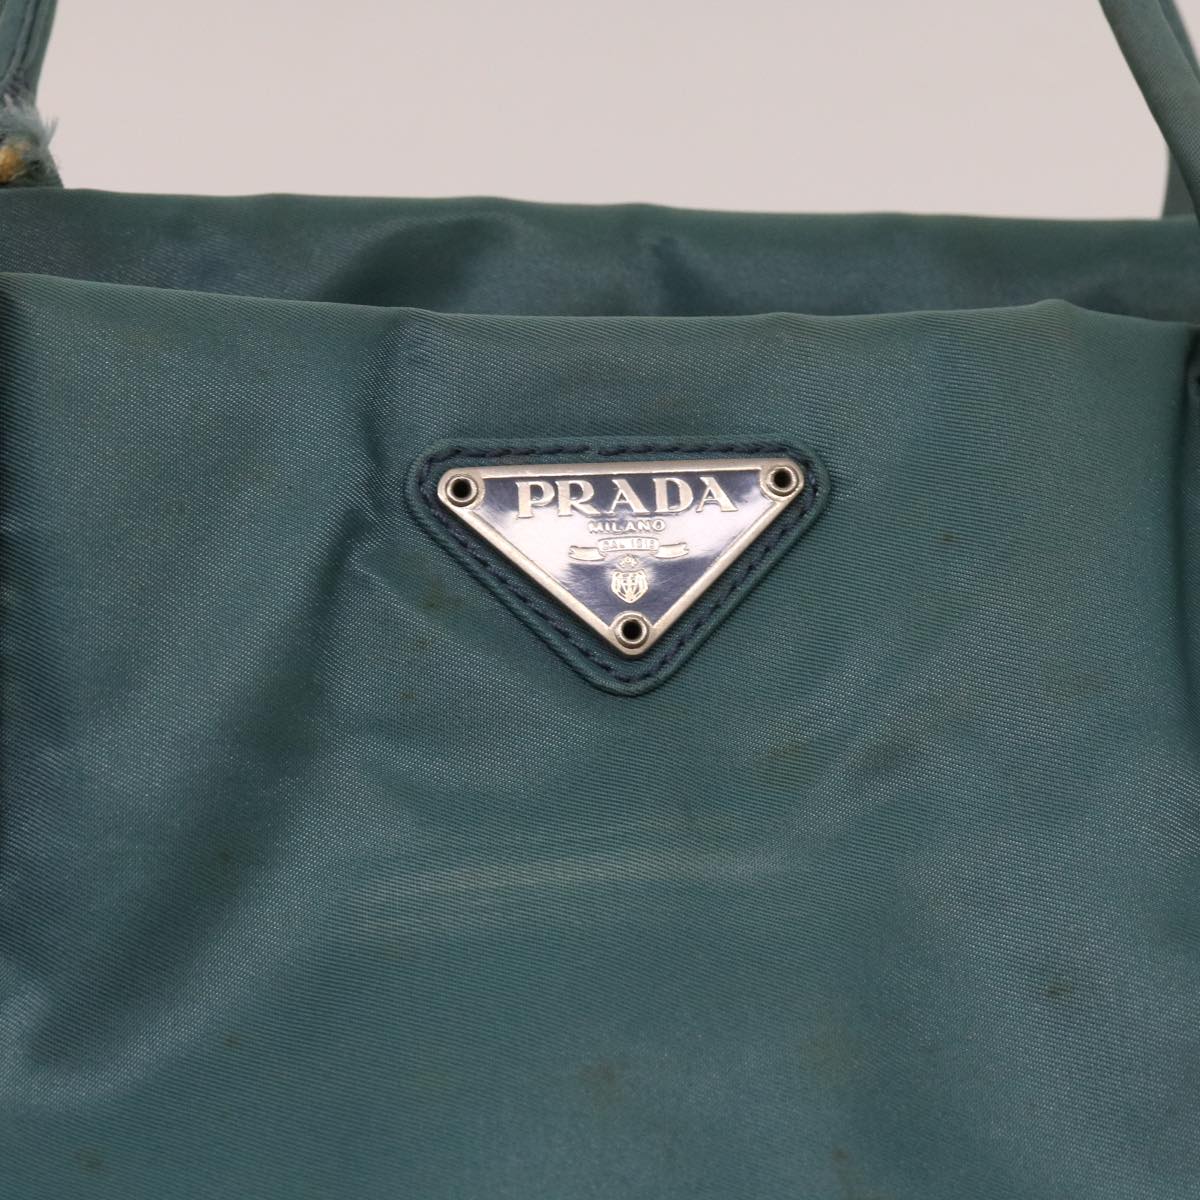 PRADA Hand Bag Nylon Blue Auth 63795